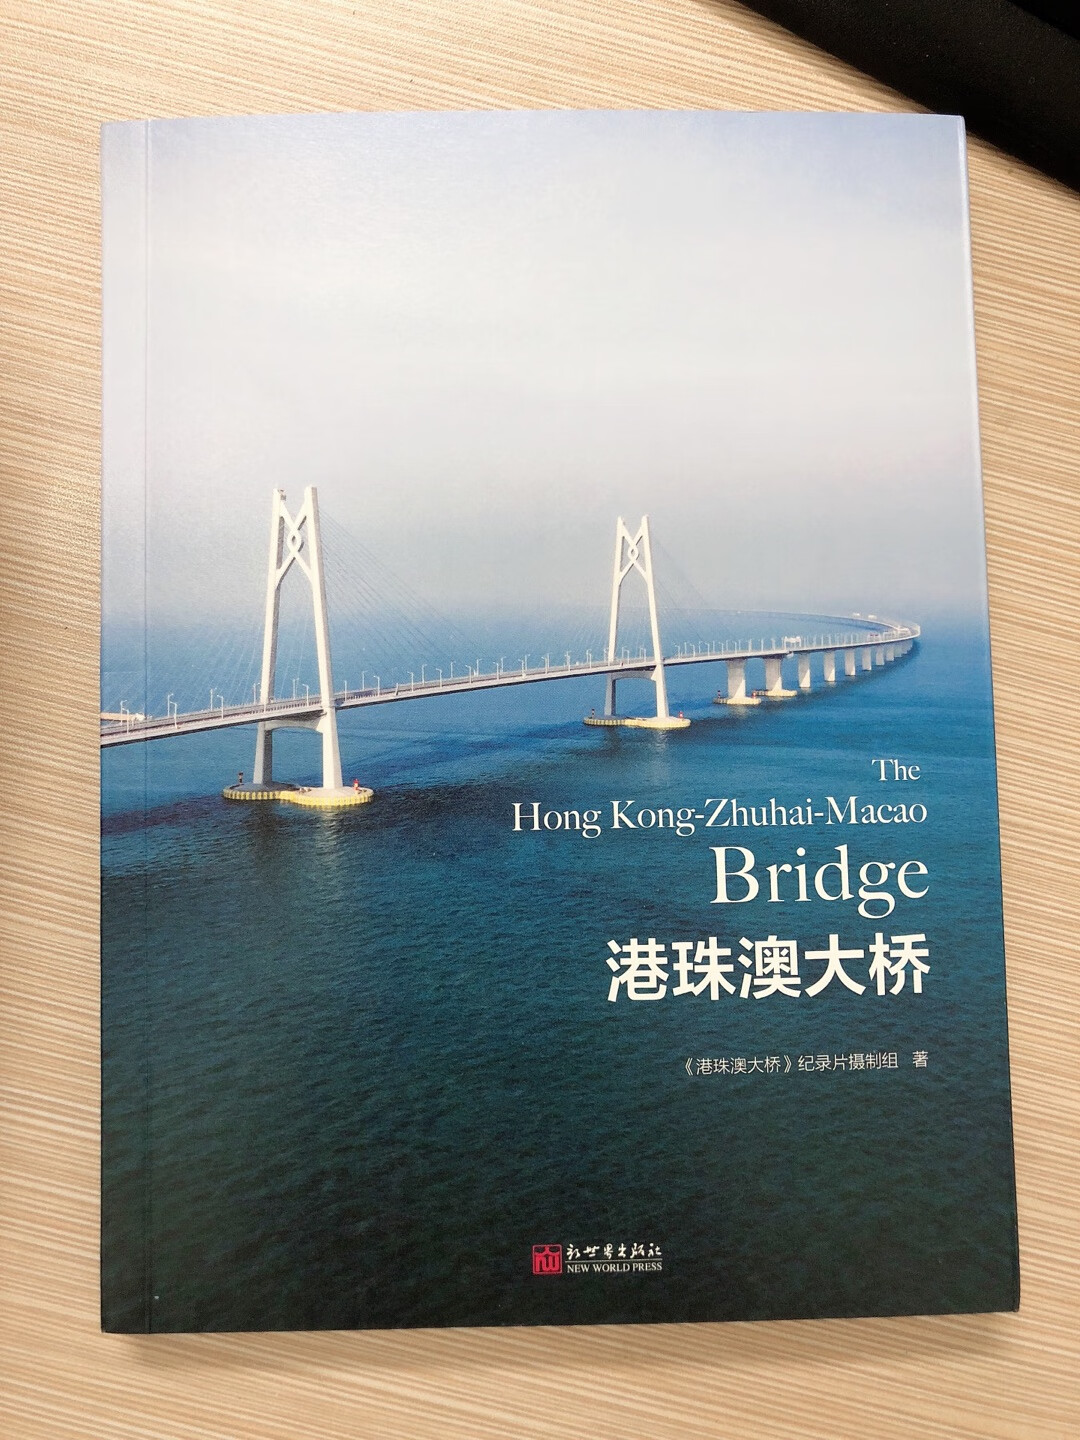 不错的一本书，真实记录了港珠澳大桥建设的过程，里面还有二维码可以扫描看相关记录，很好！孩子特别喜欢！